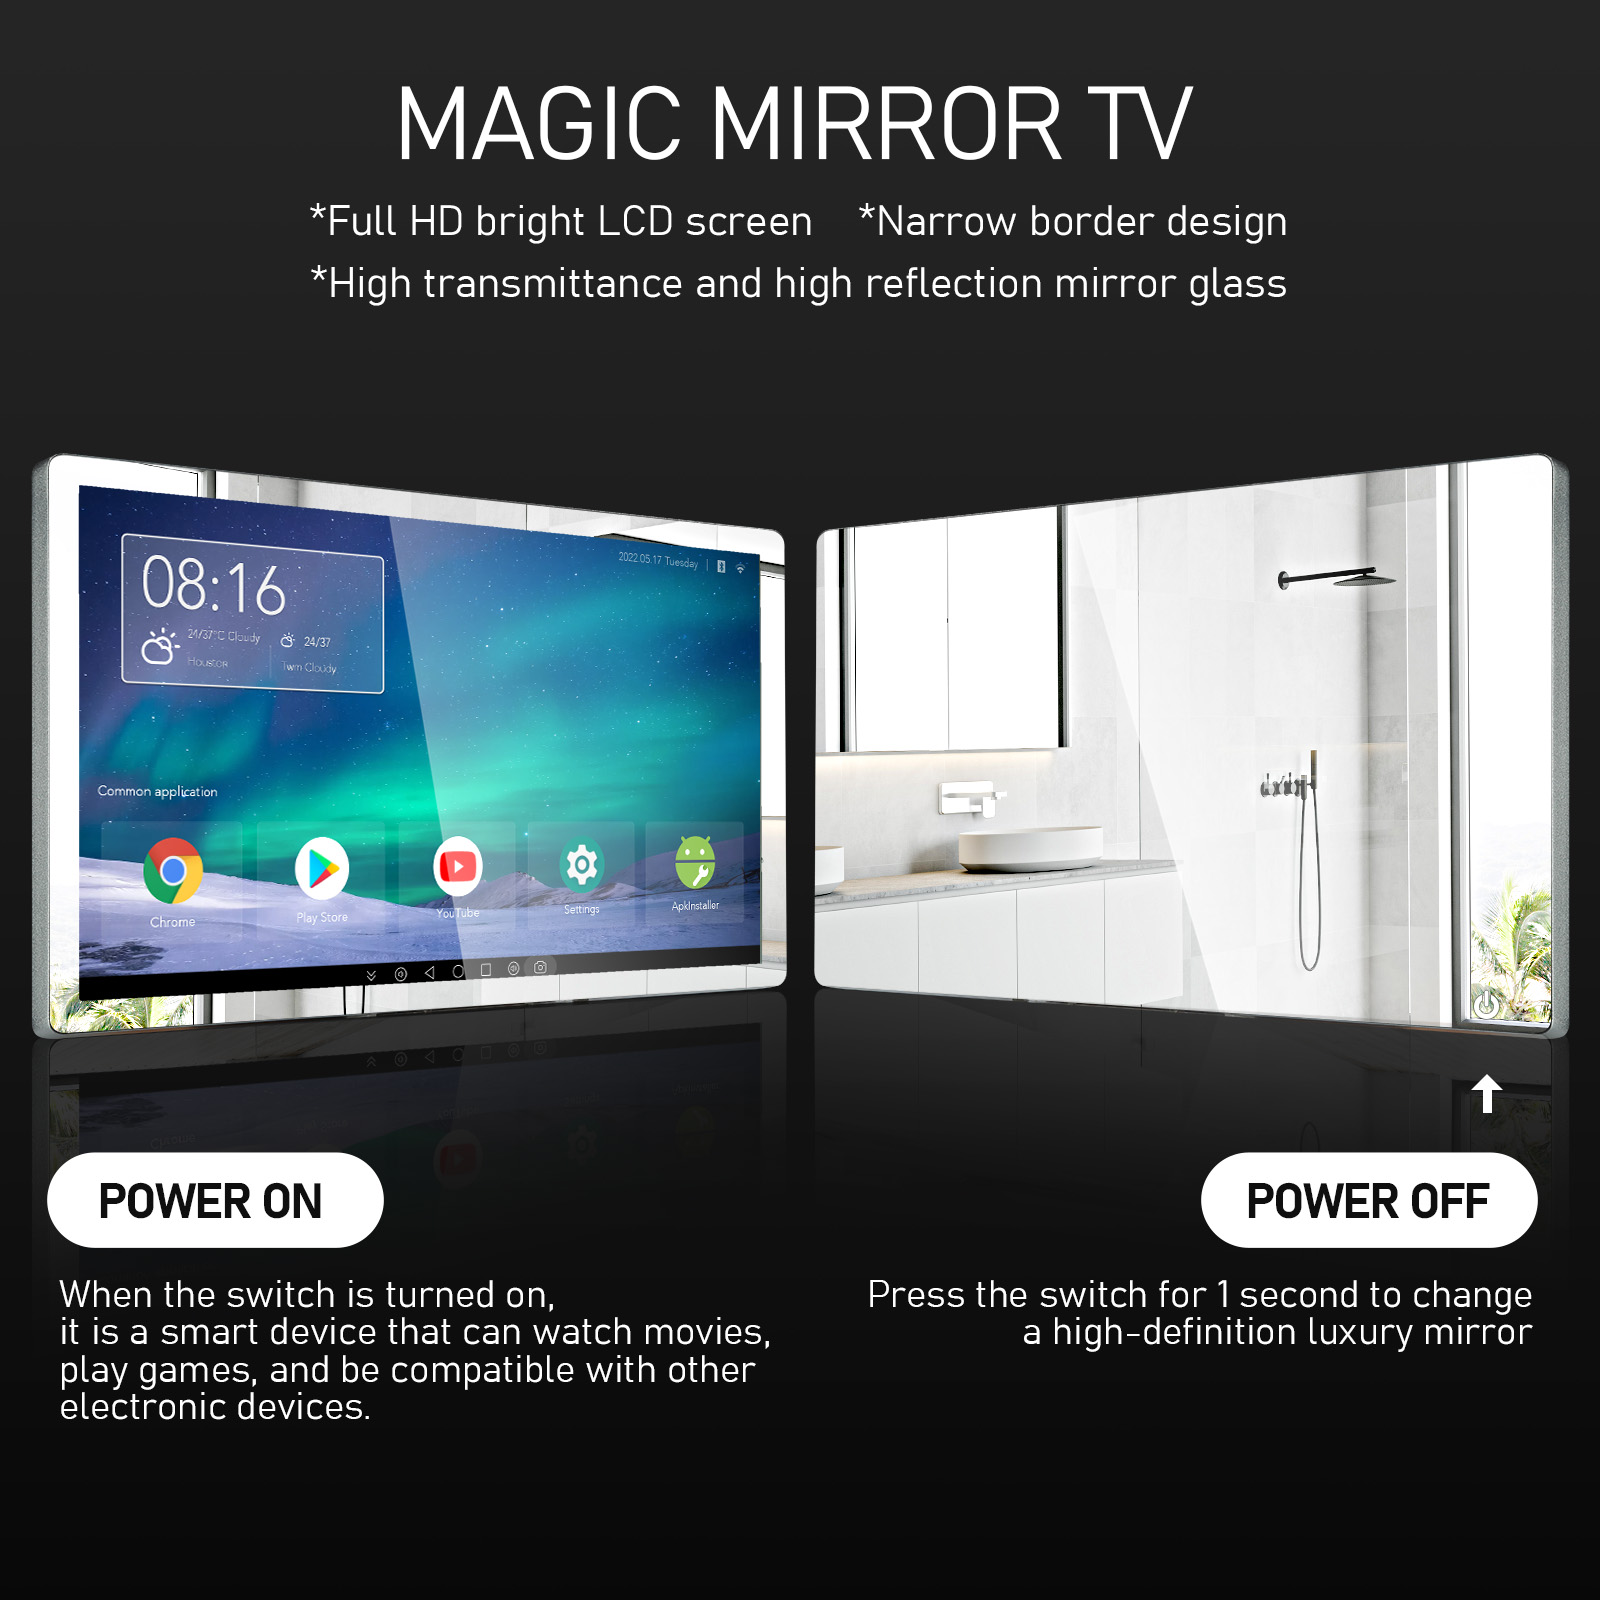 magic mirror TV